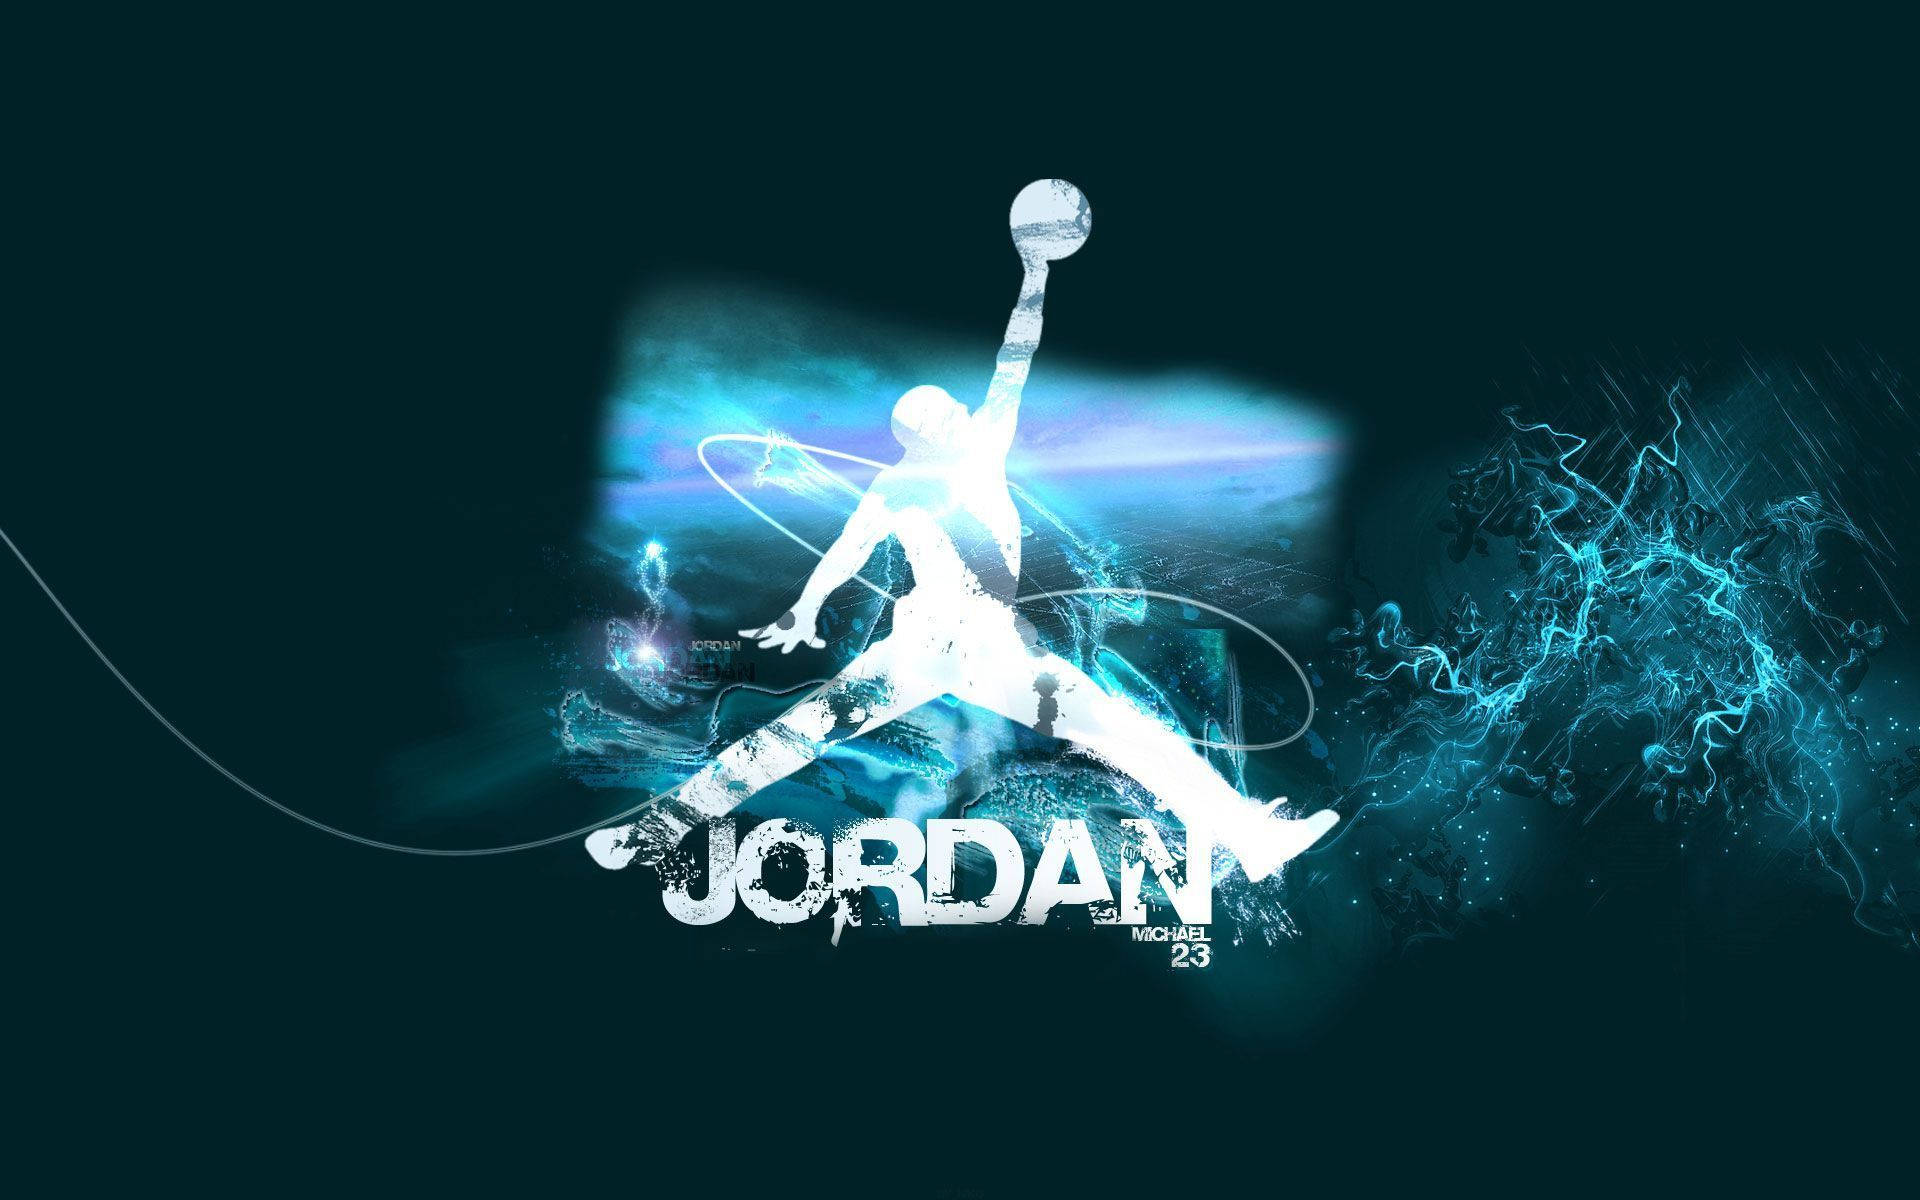 Jordan Logo Mixed Blue Colors Wallpaper